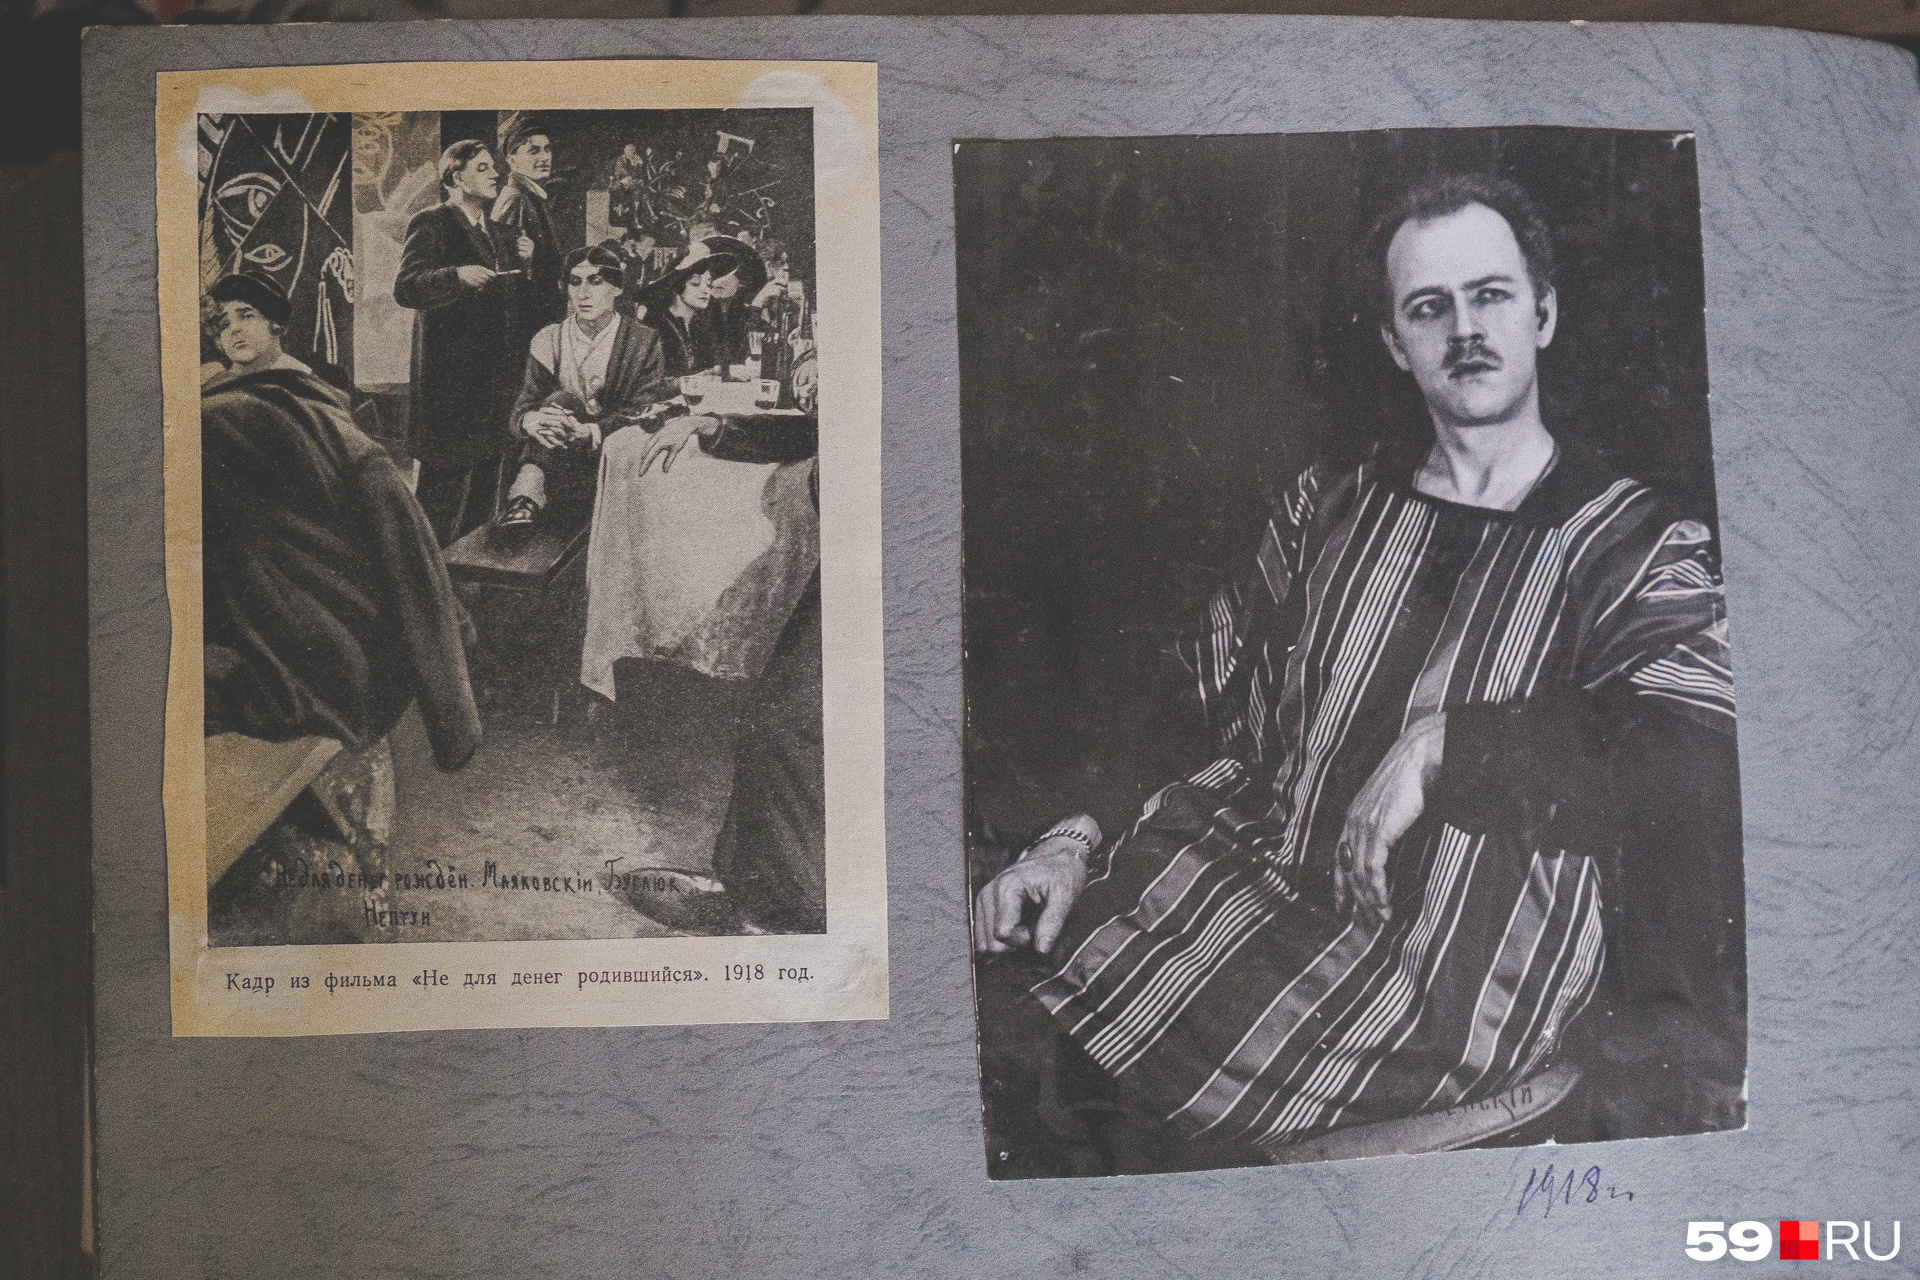 Кадр из фильма «Не для денег родившийся» 1918 года, в котором снялся поэт, и сам Василий Каменский в блузе